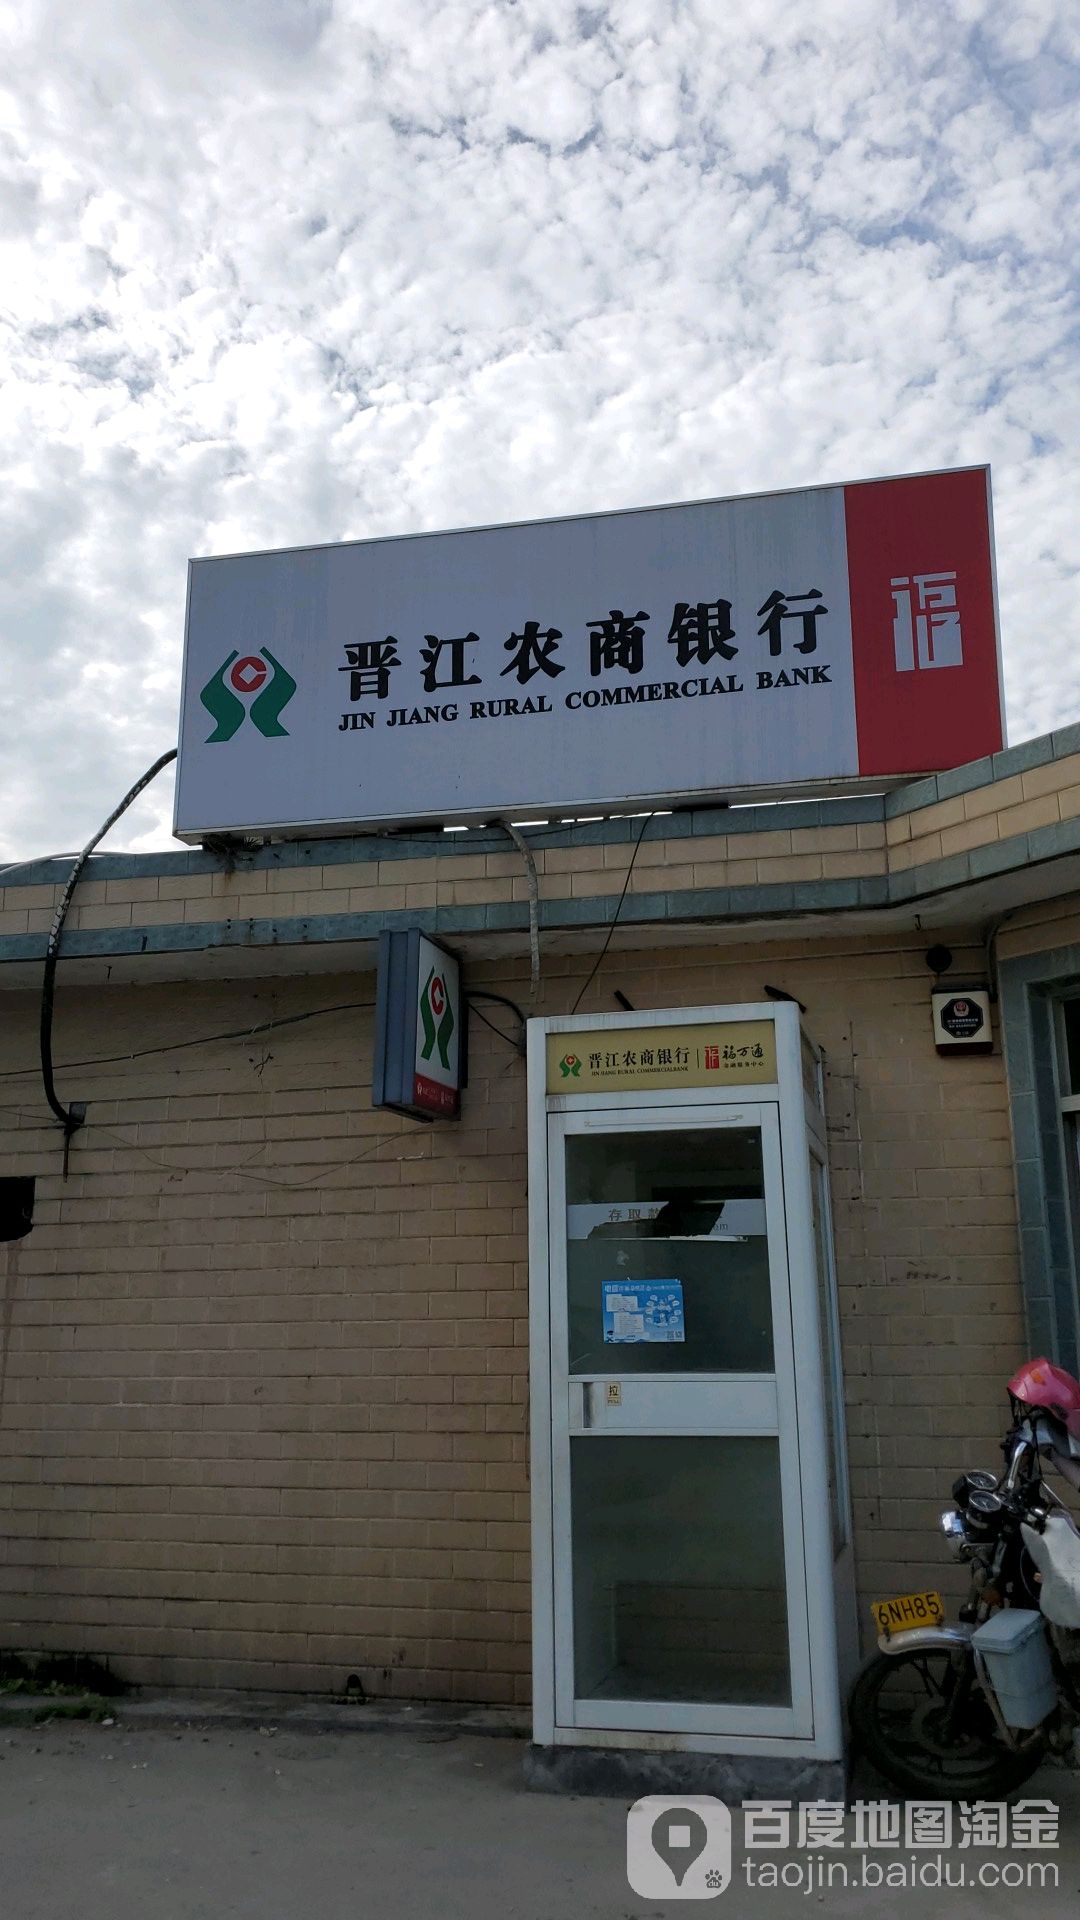 晉江農村合作銀行ATM